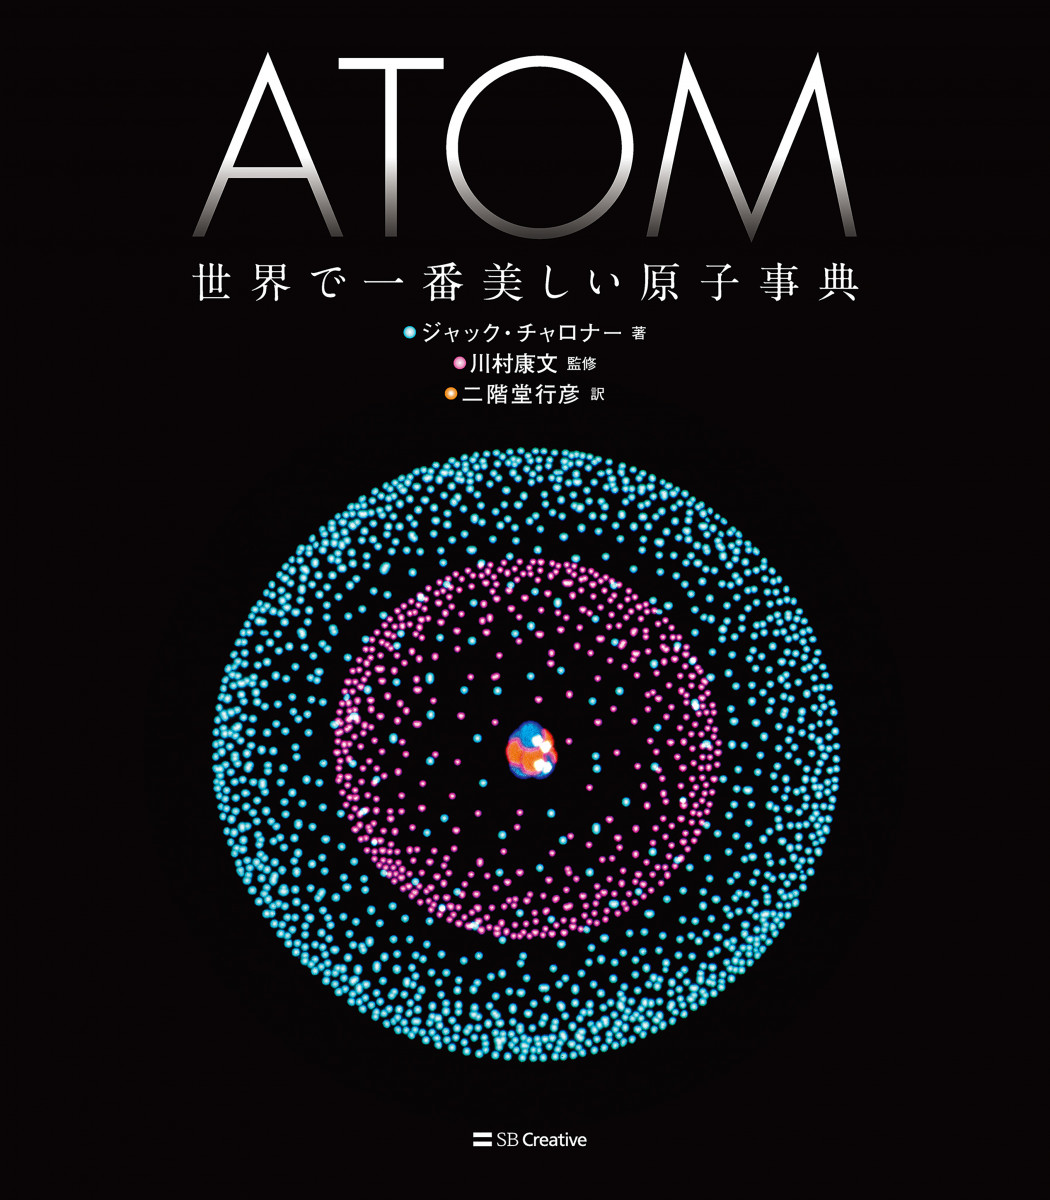 ATOM 世界で一番美しい原子事典の商品画像